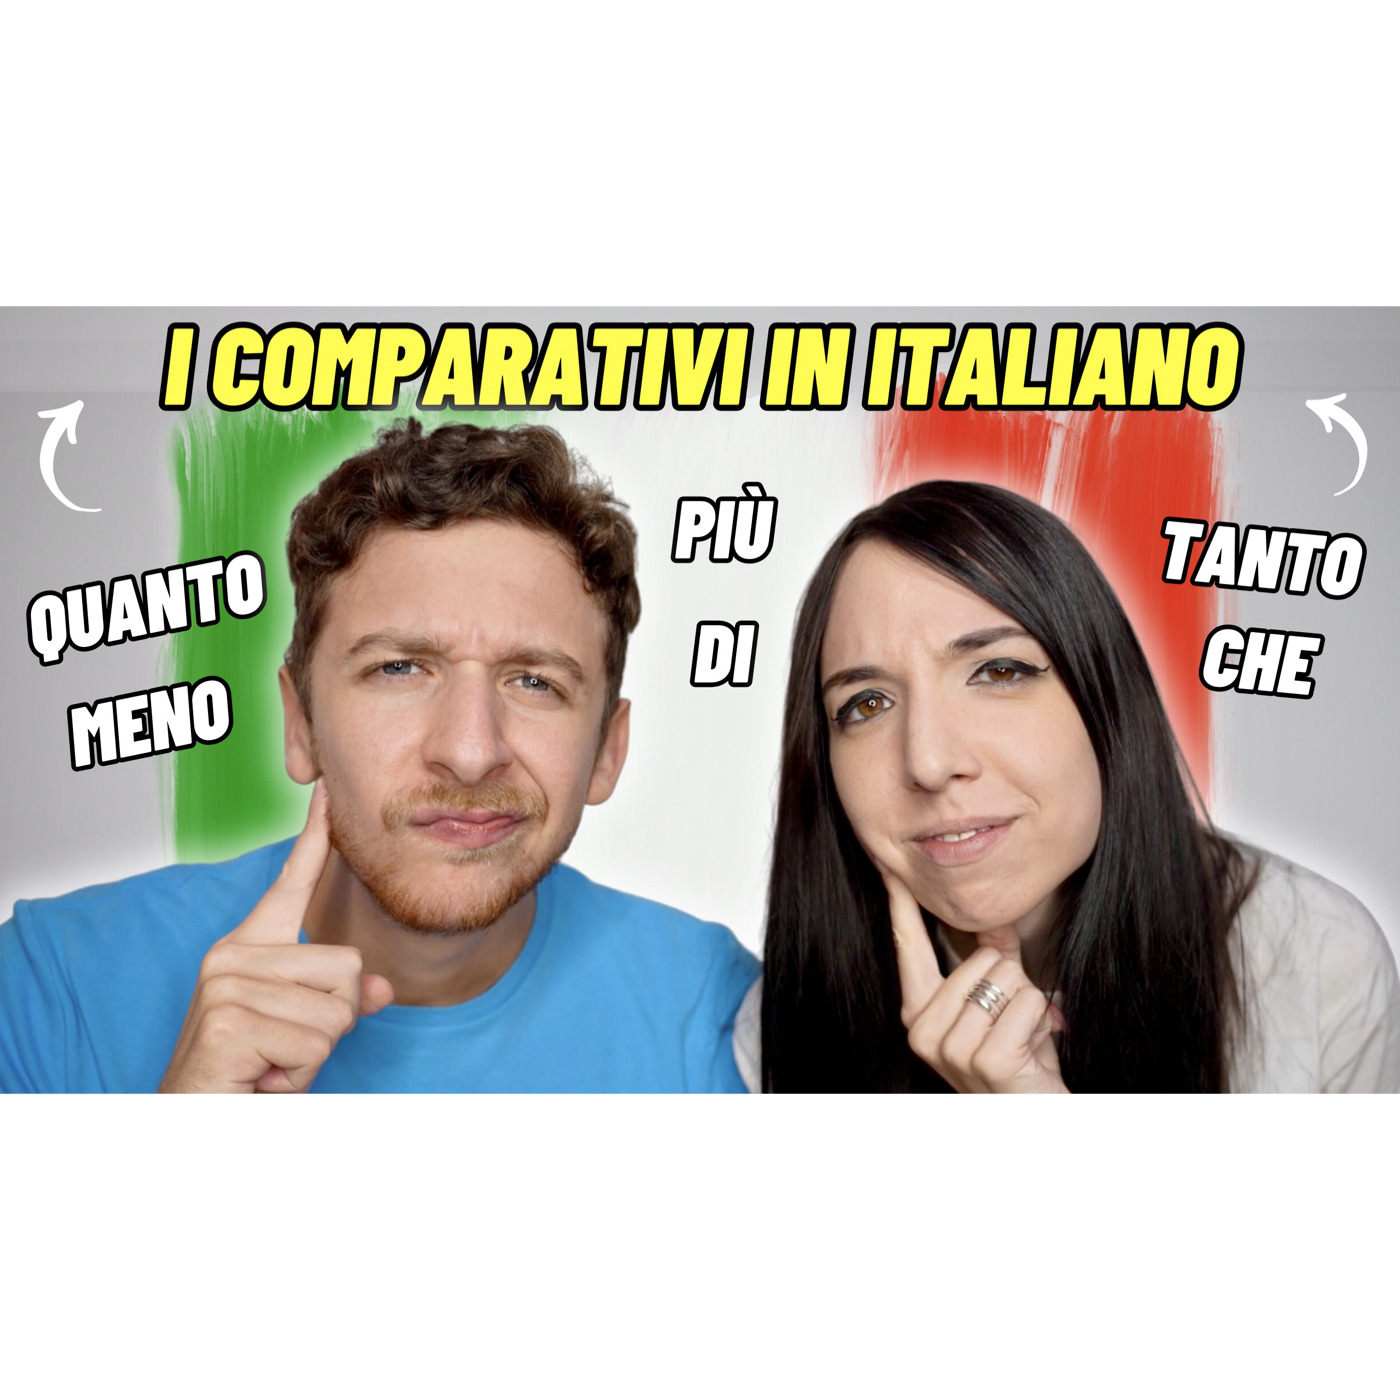 Episode 592: Come Funzionano I Comparativi In Italiano Imparare l’Italiano